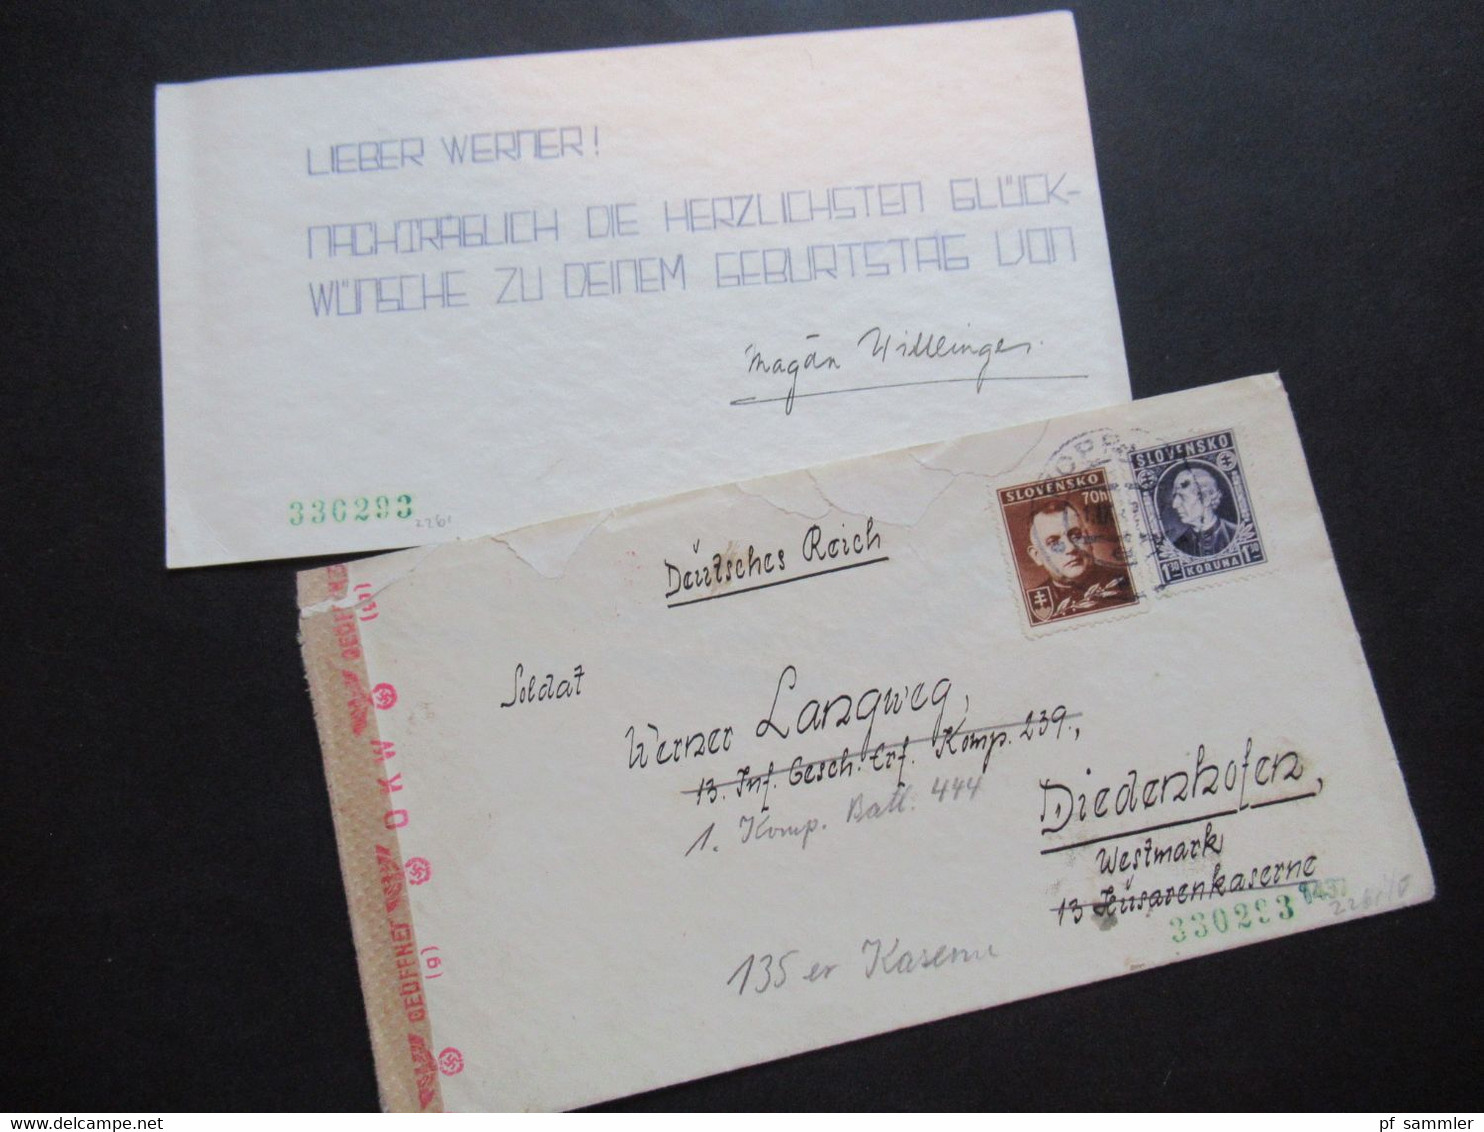 Slovesko / Slowakei 1942 Zensurbrief Mit Inhalt Nach Diedenhofen Westmark Husarenkaserne Weitergeleitet / Mehrfachzensur - Cartas & Documentos